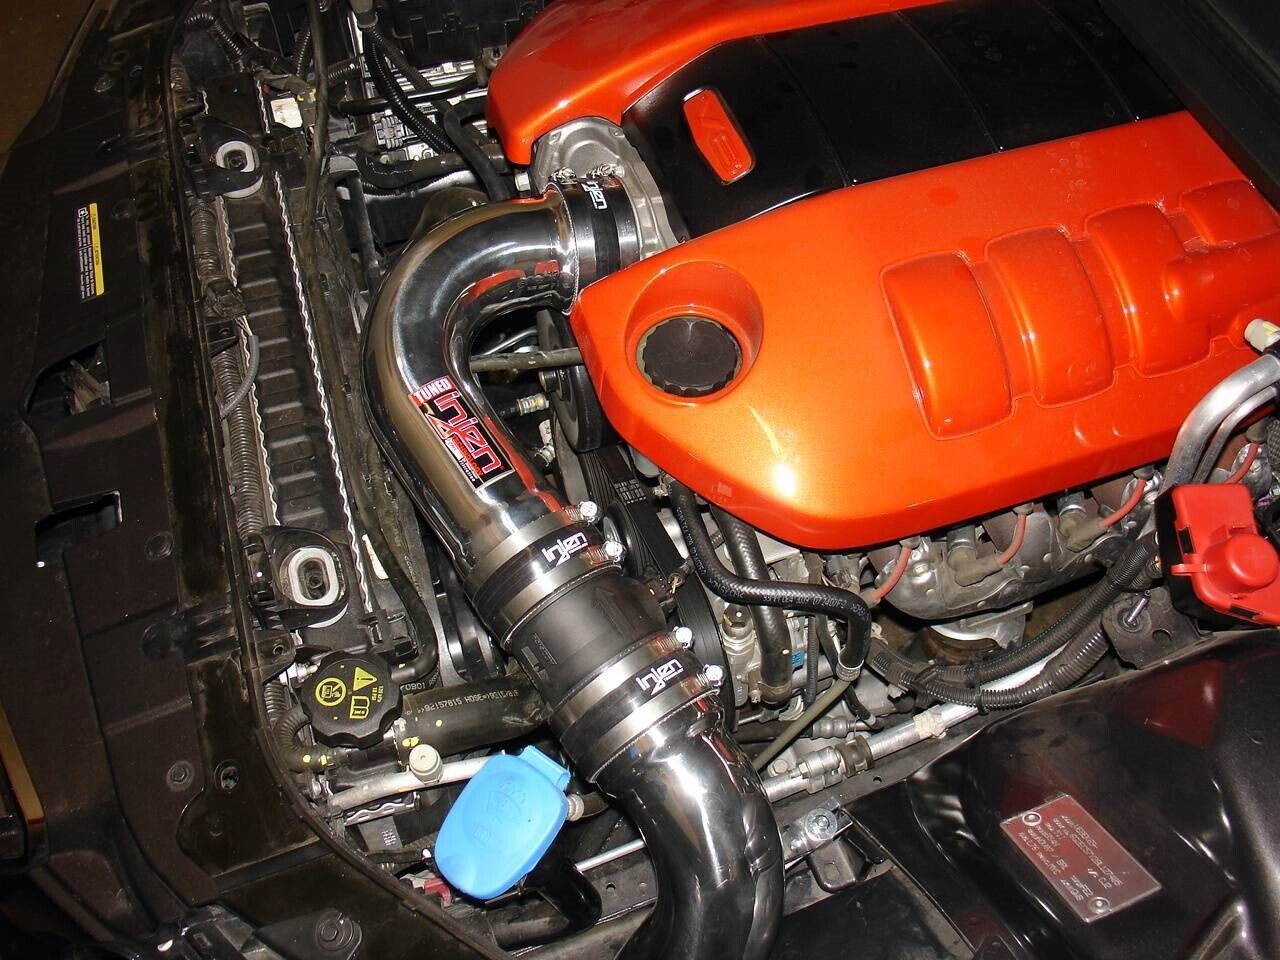 *In Stock* Injen PF Polish Cold Air Intake Kit for 2008-2009 Pontiac G8 6.0L V8